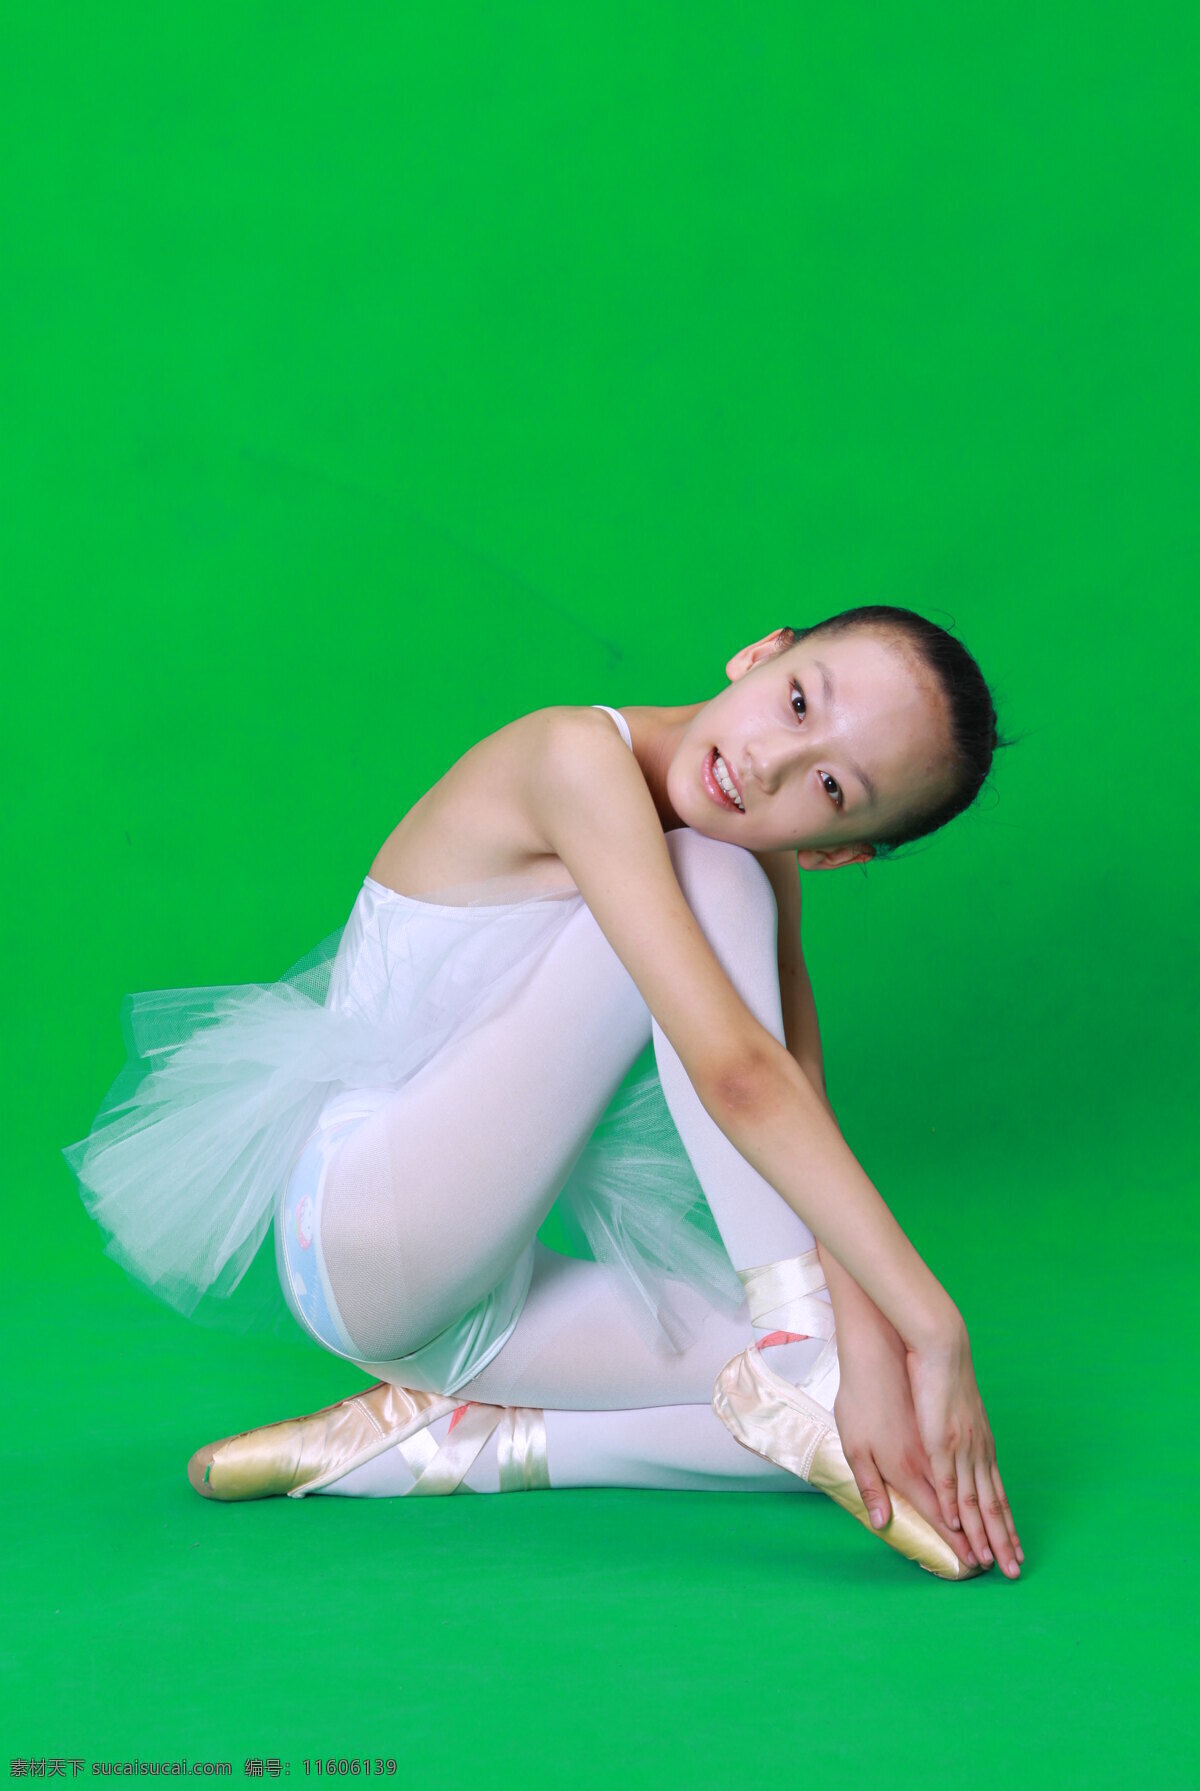 舞蹈女孩 舞蹈 女孩 写真 练功 艺术 儿童 人物图库 人物摄影